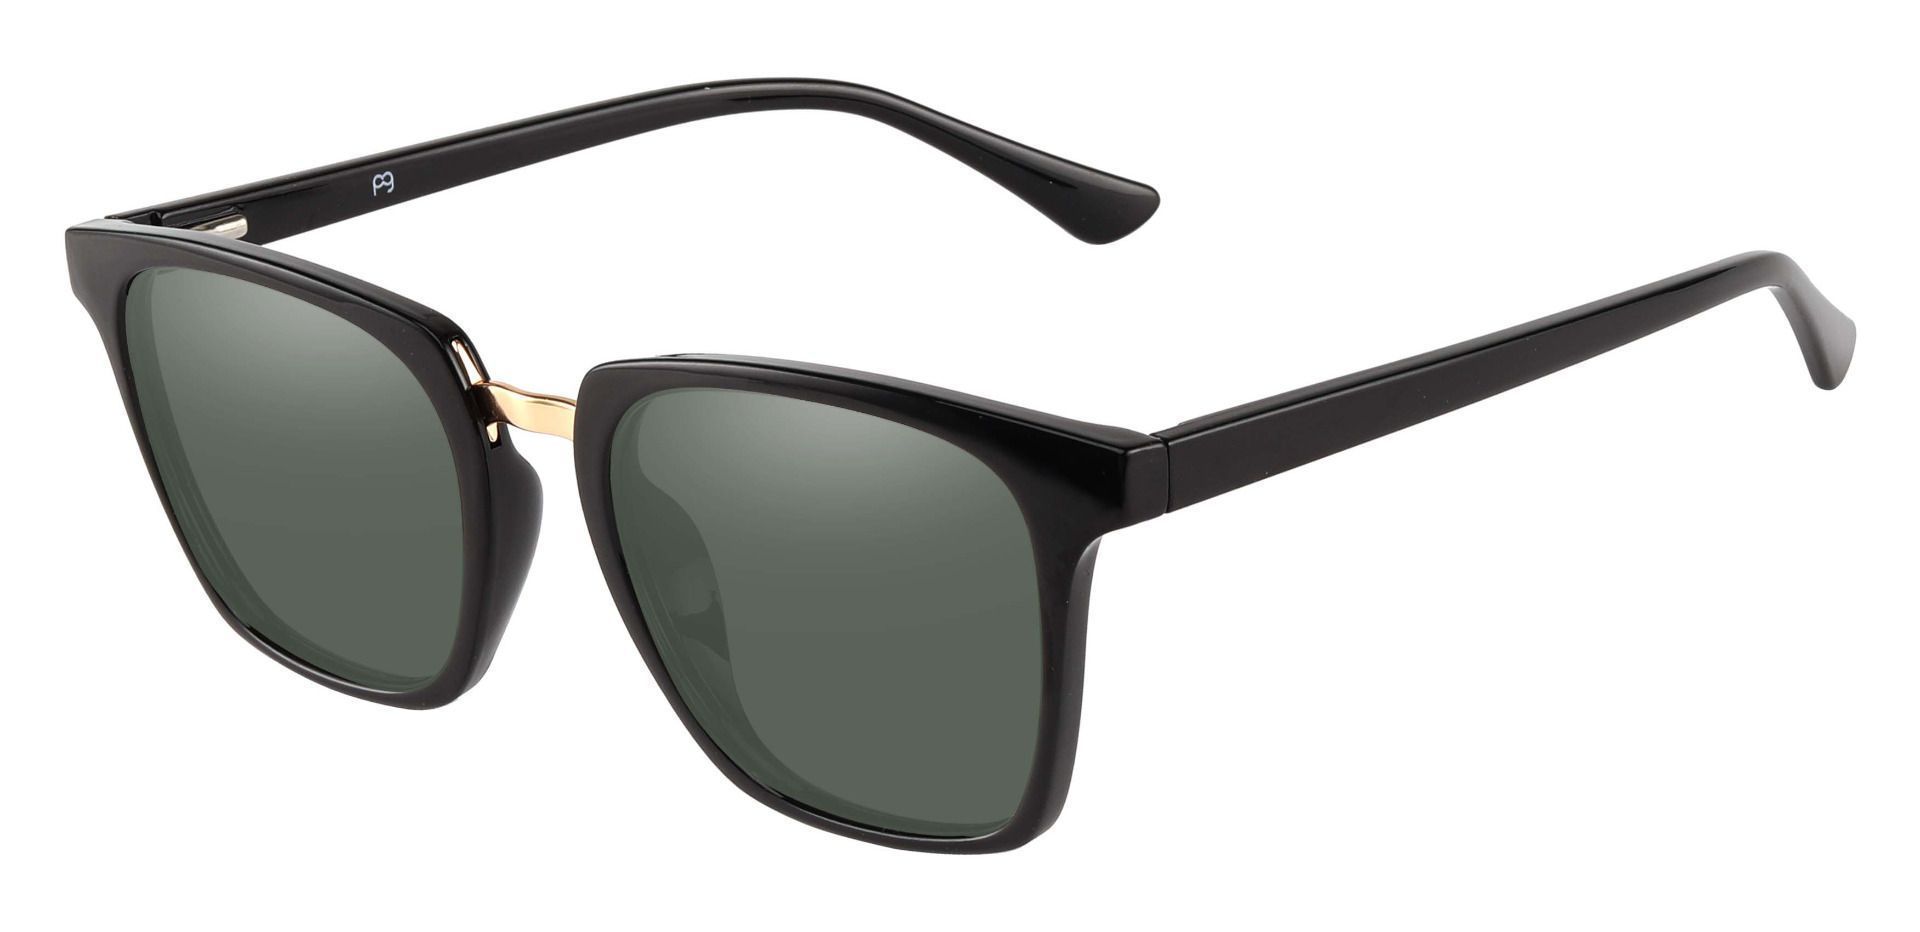 Delta Square Non-Rx Sunglasses - Black Frame With Green Lenses